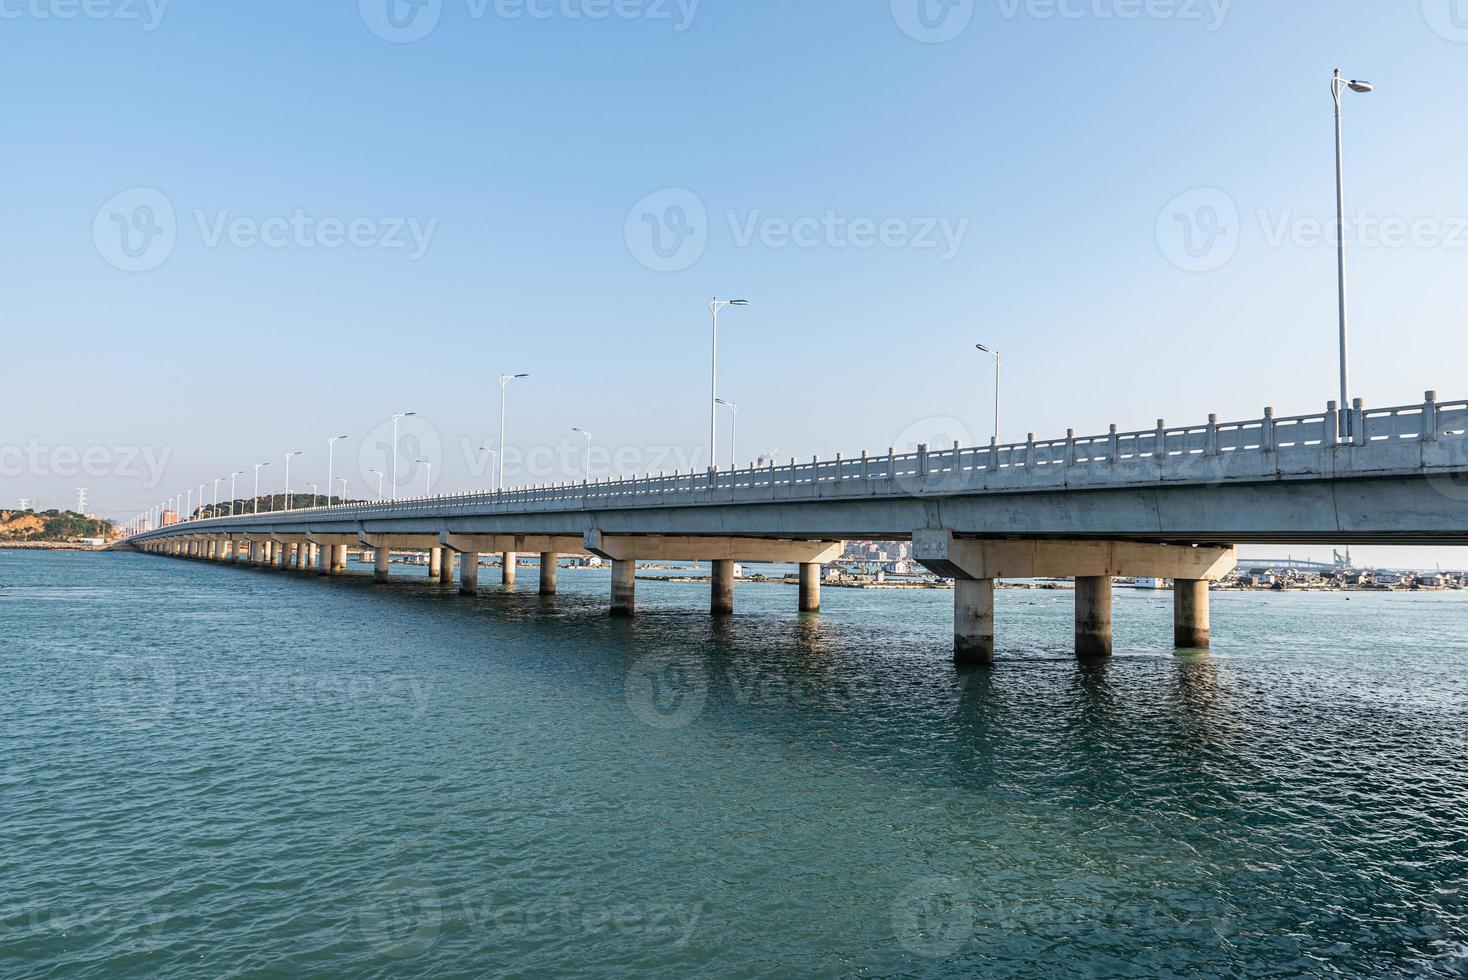 largos puentes costeros cruzan el mar foto